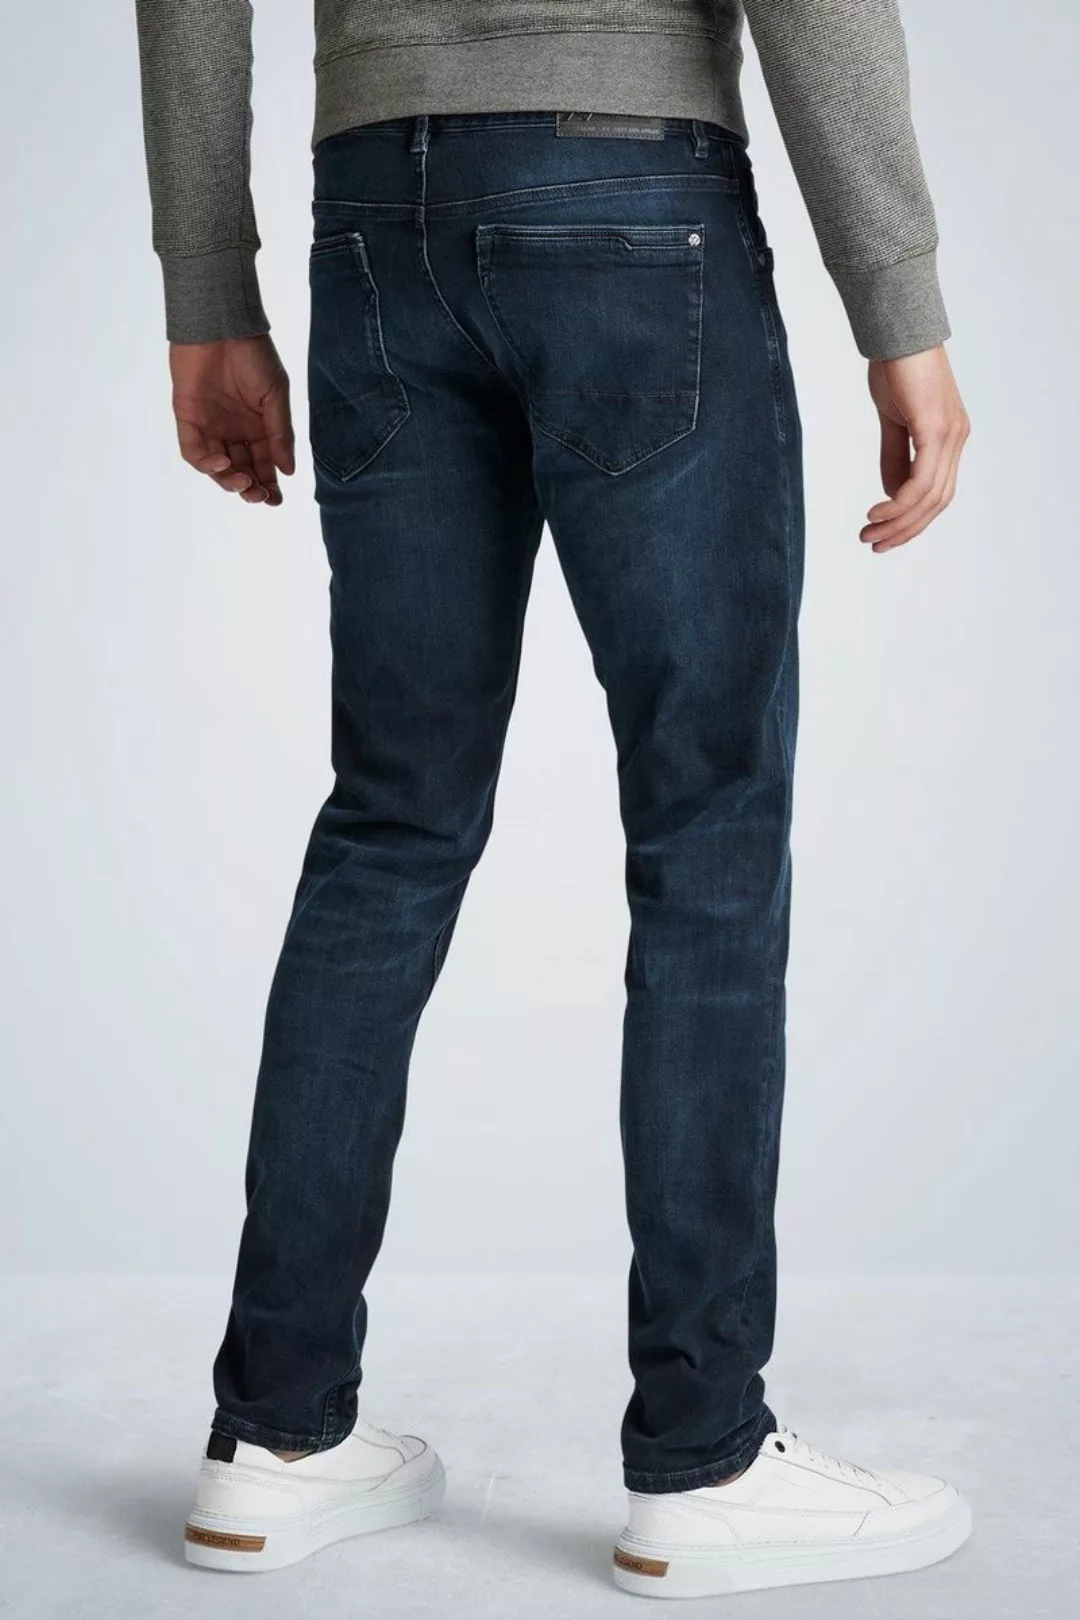 PME Legend XV Jeans Blue Black PTR150 - Größe W 32 - L 30 günstig online kaufen